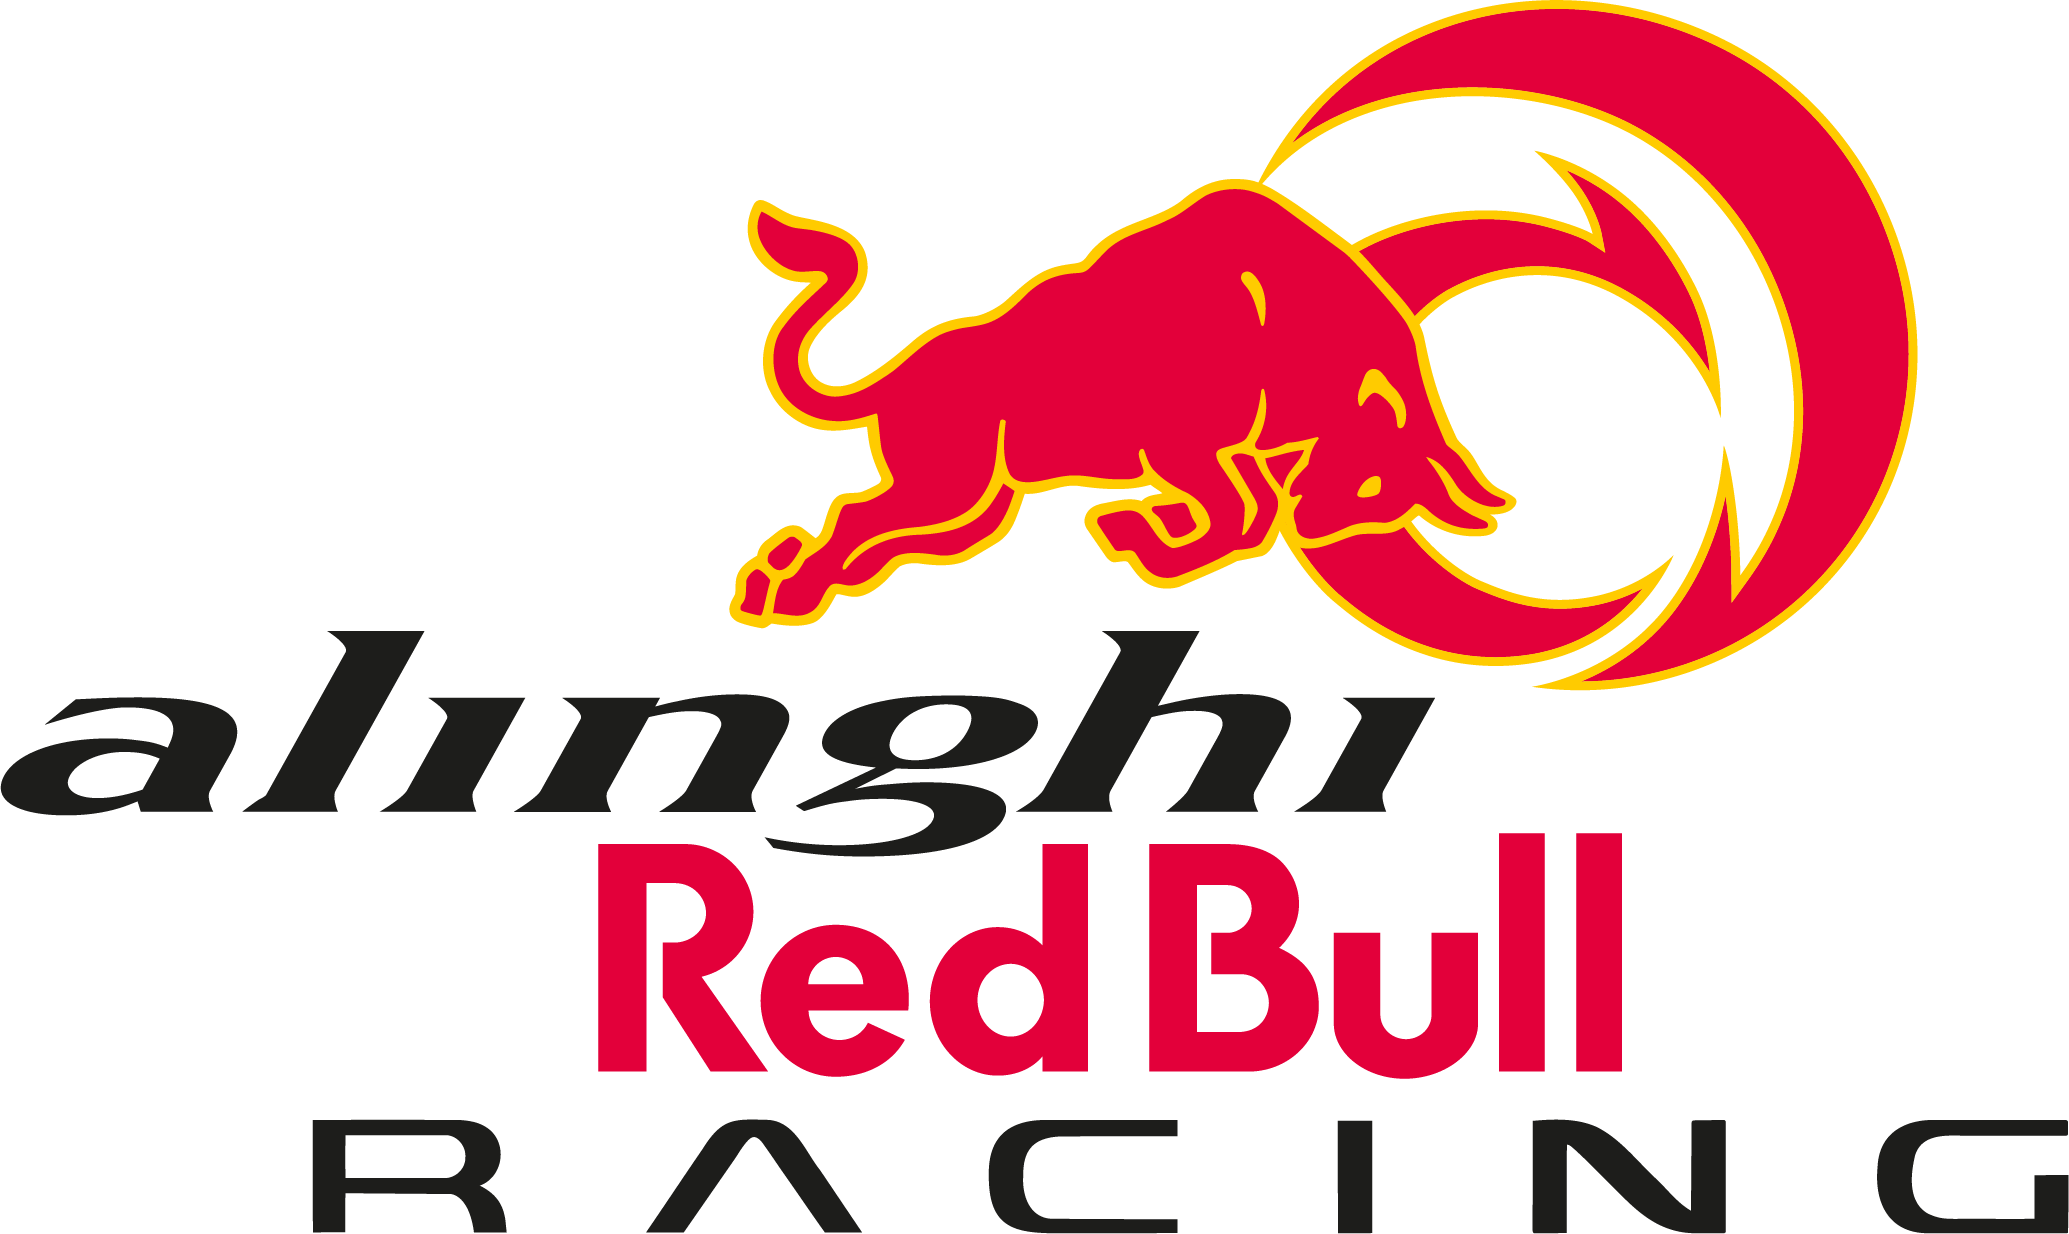 Oracle Red Bull Racing Team Flag